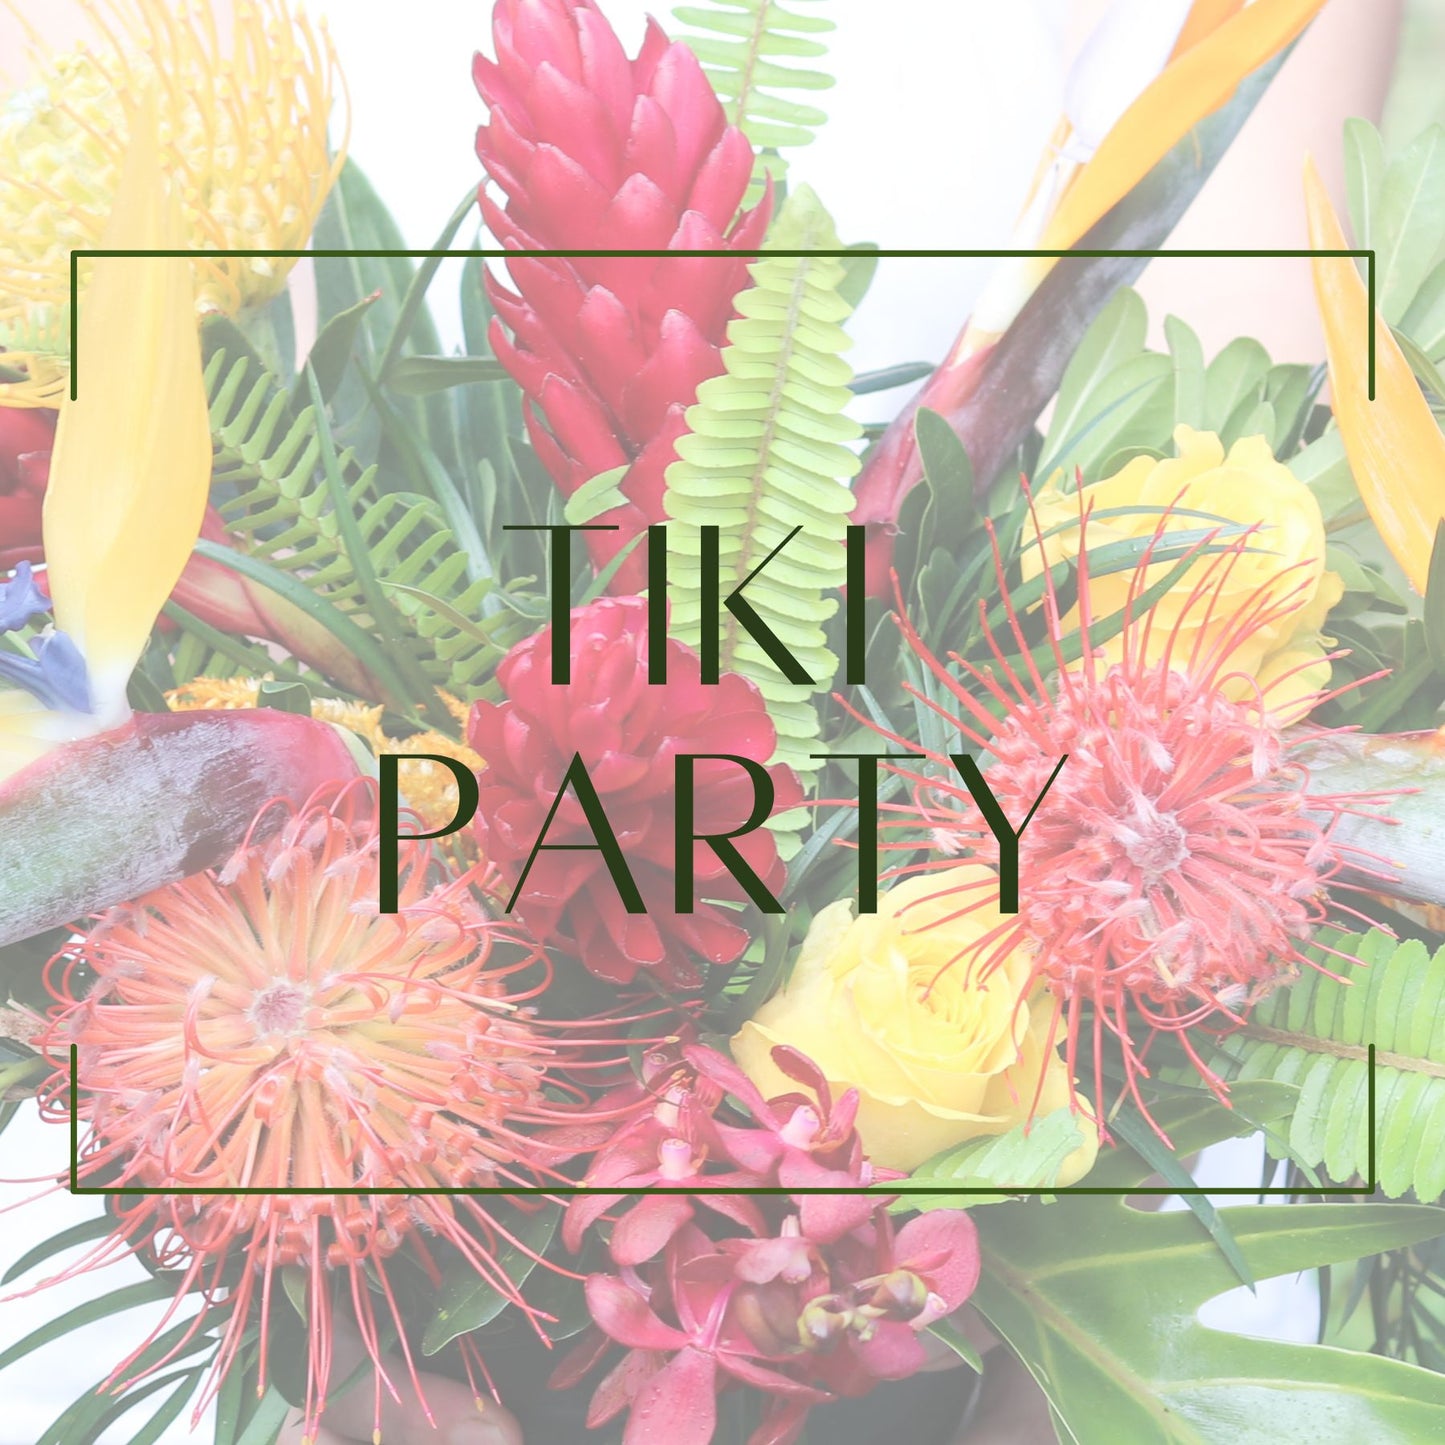 Tiki Party - Round Table Decor